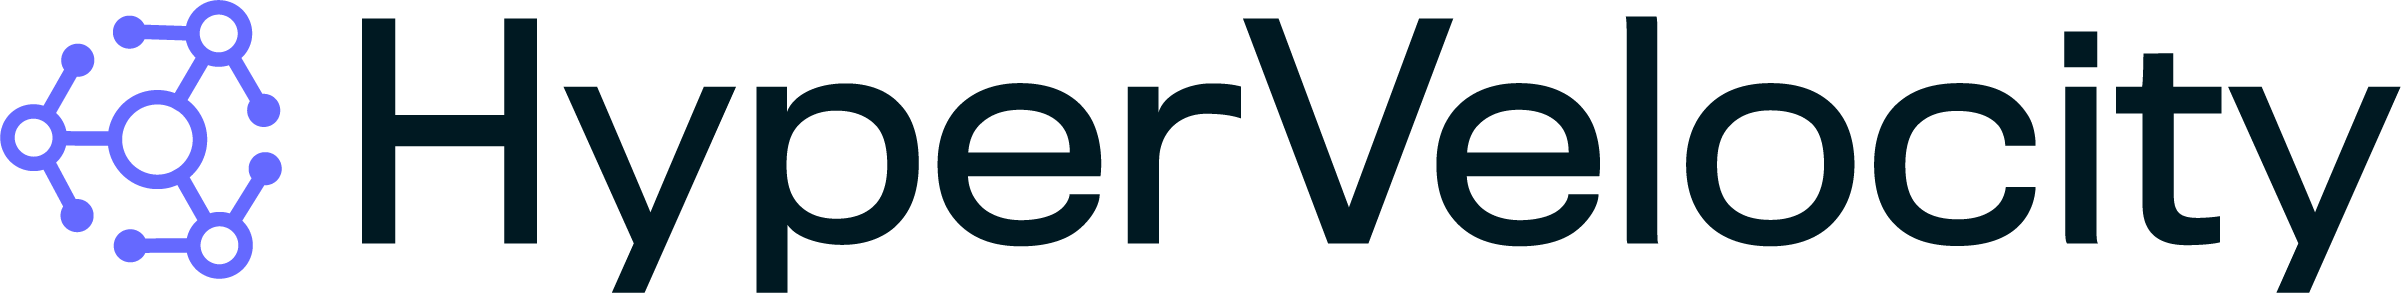 HyperVelocity 로고